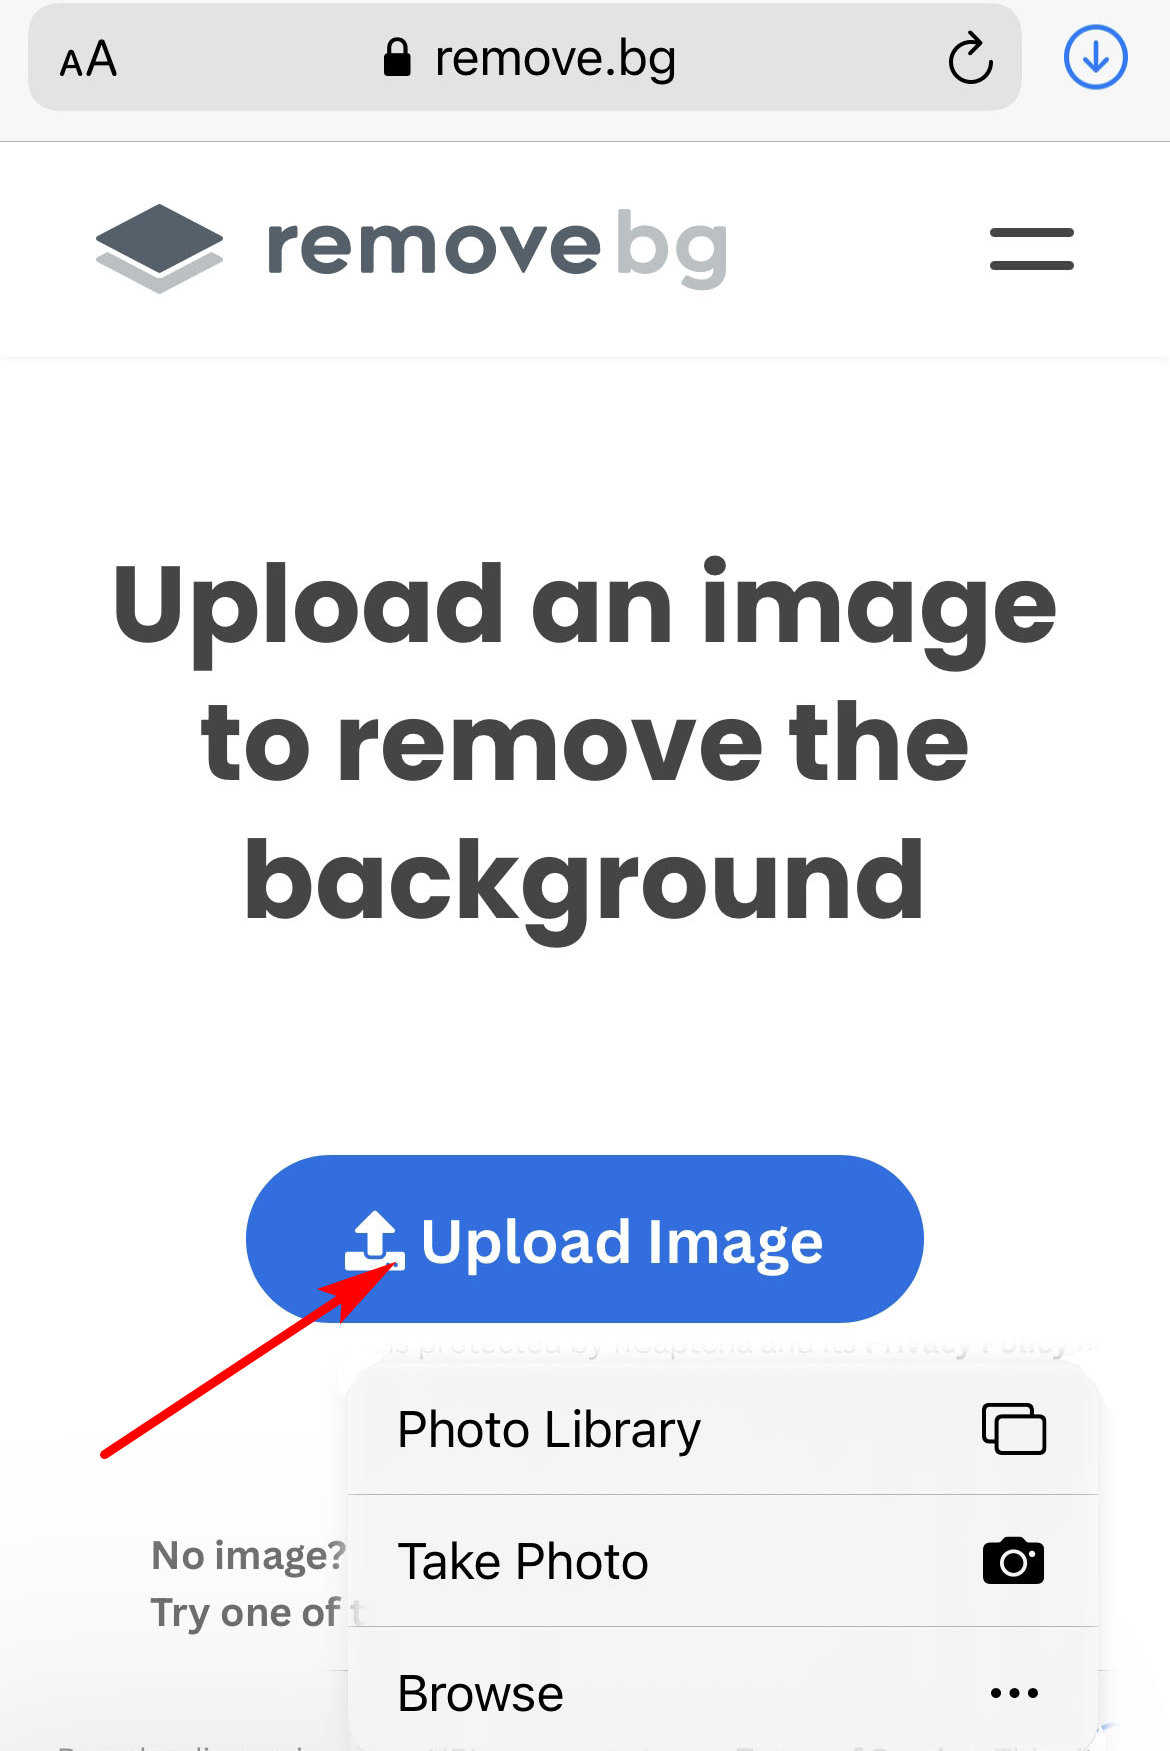 Carregue uma imagem em remove.bg